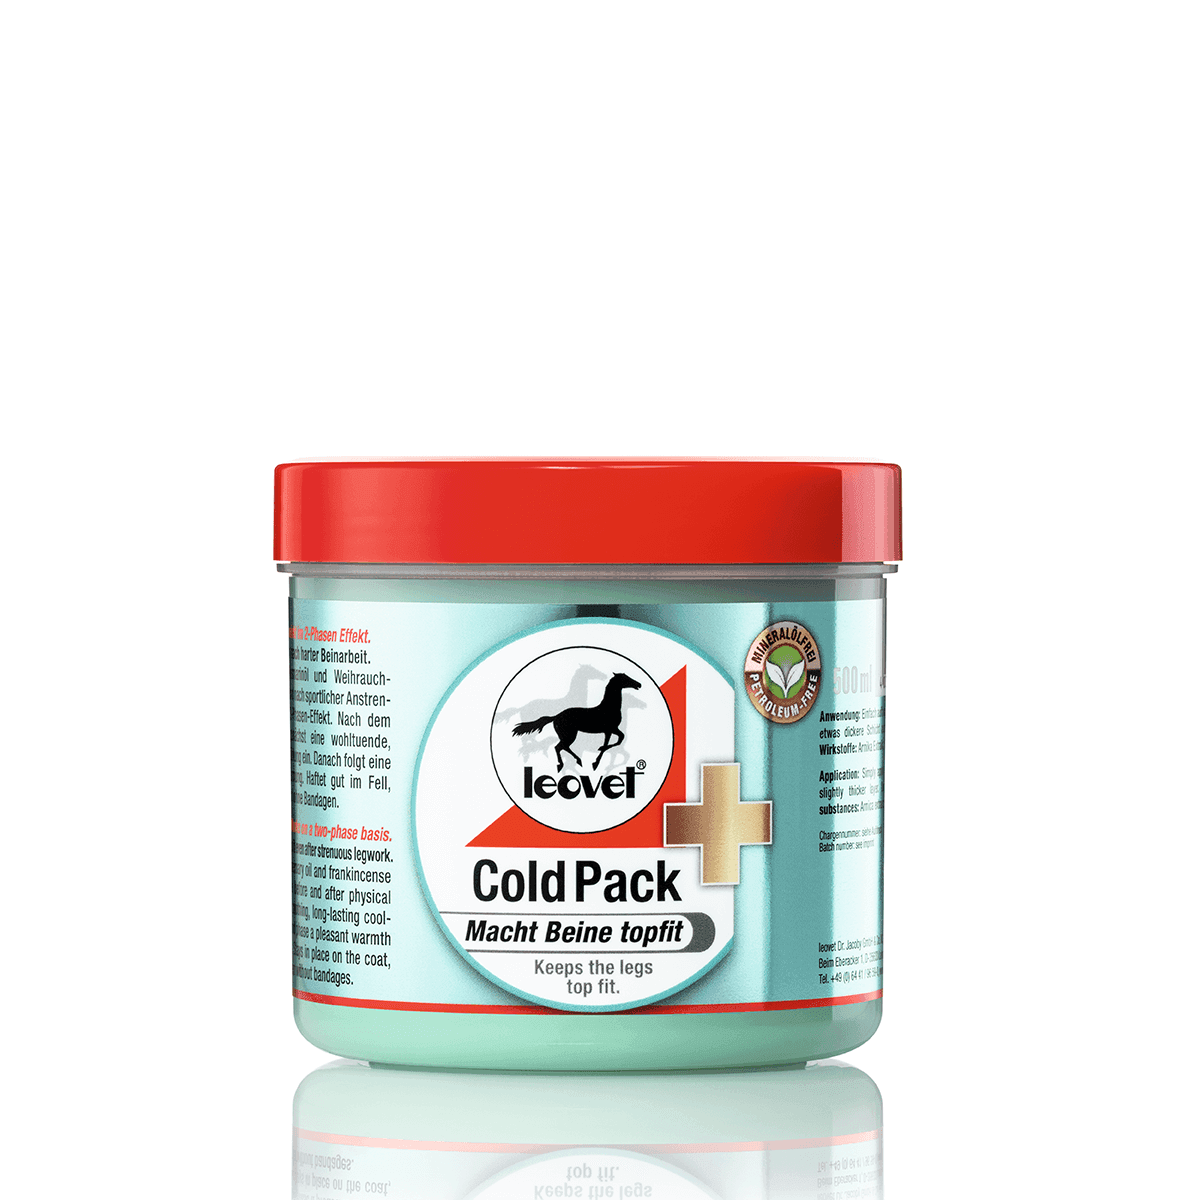 Se Leovet Cold Pack apotekerens hestesalve, 500 ml. - Køle/Varme gel hest hos heyo.dk